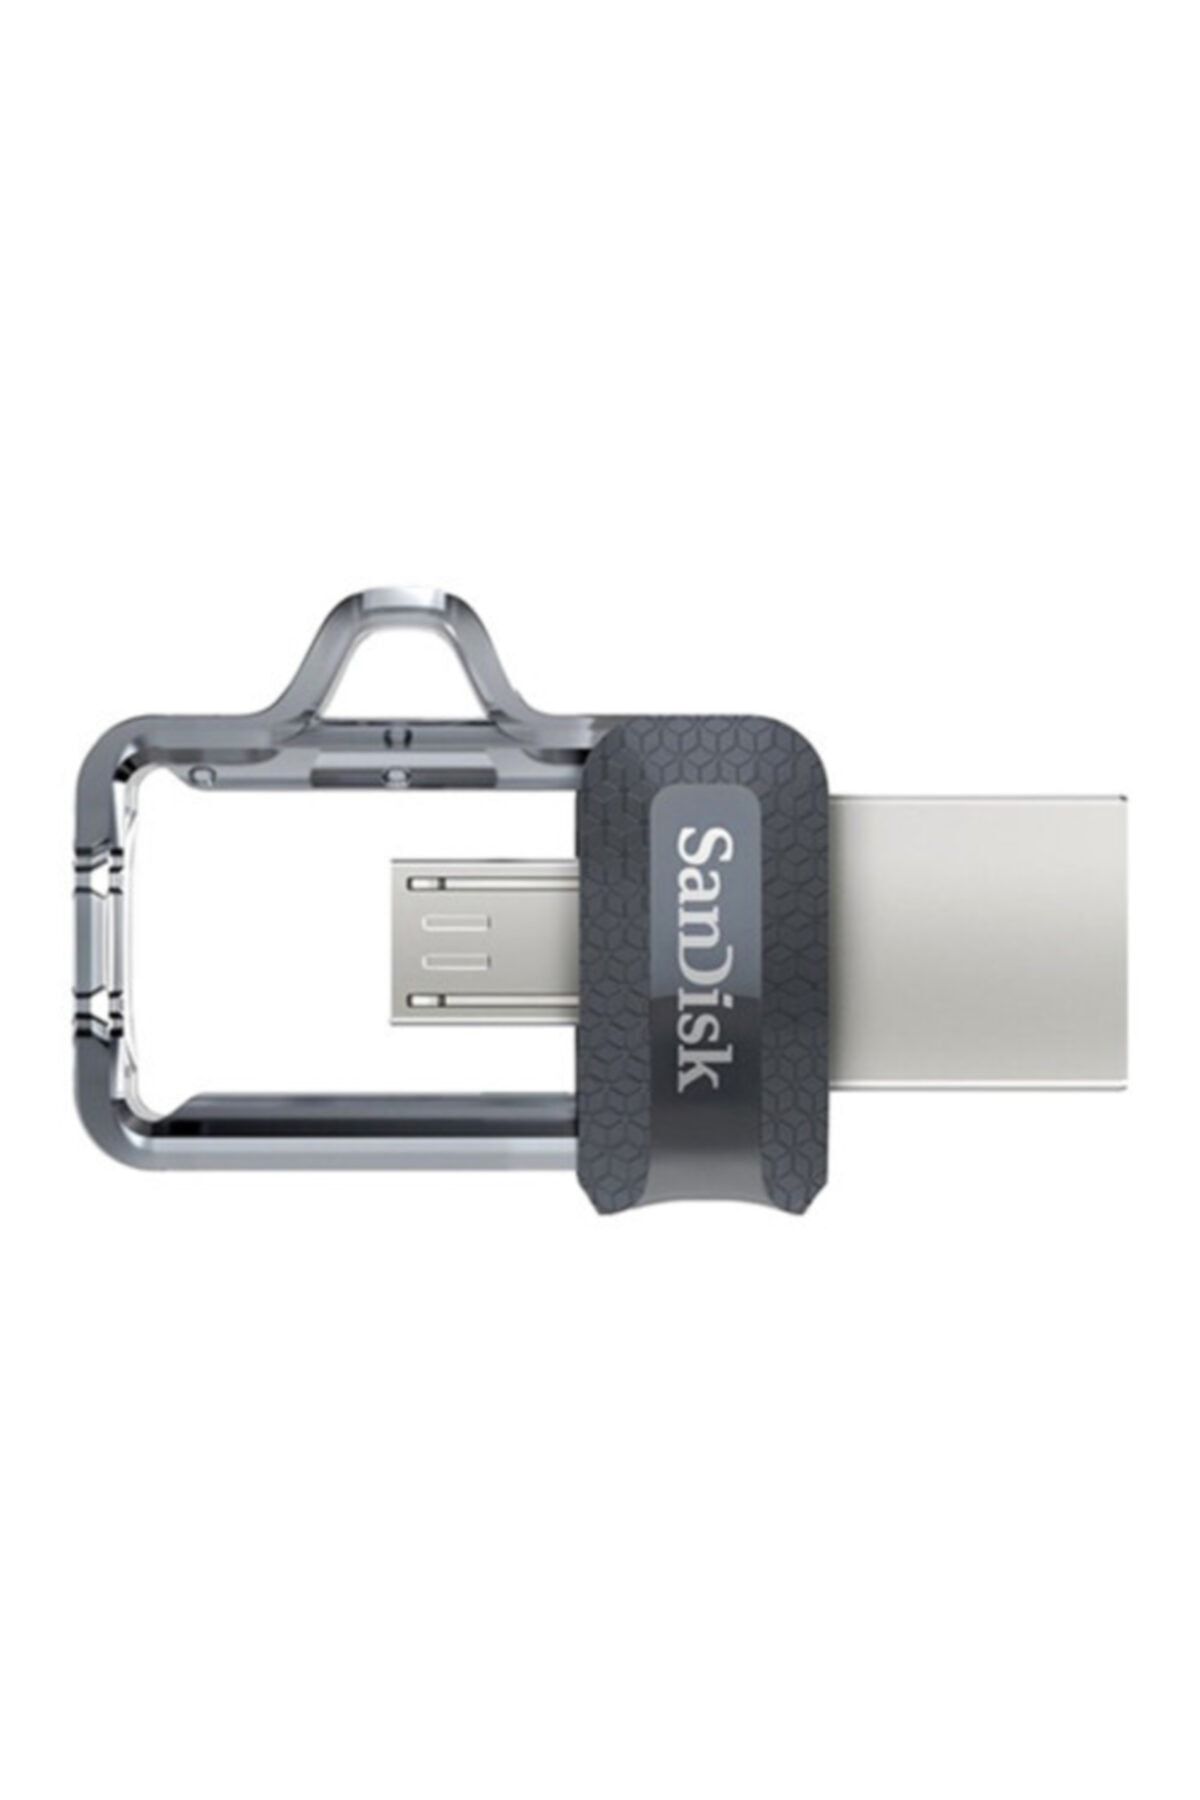 Sandisk Ultra Dual Drive 64 Gb M3.0 Usb Bellek Sddd3-064g-g46